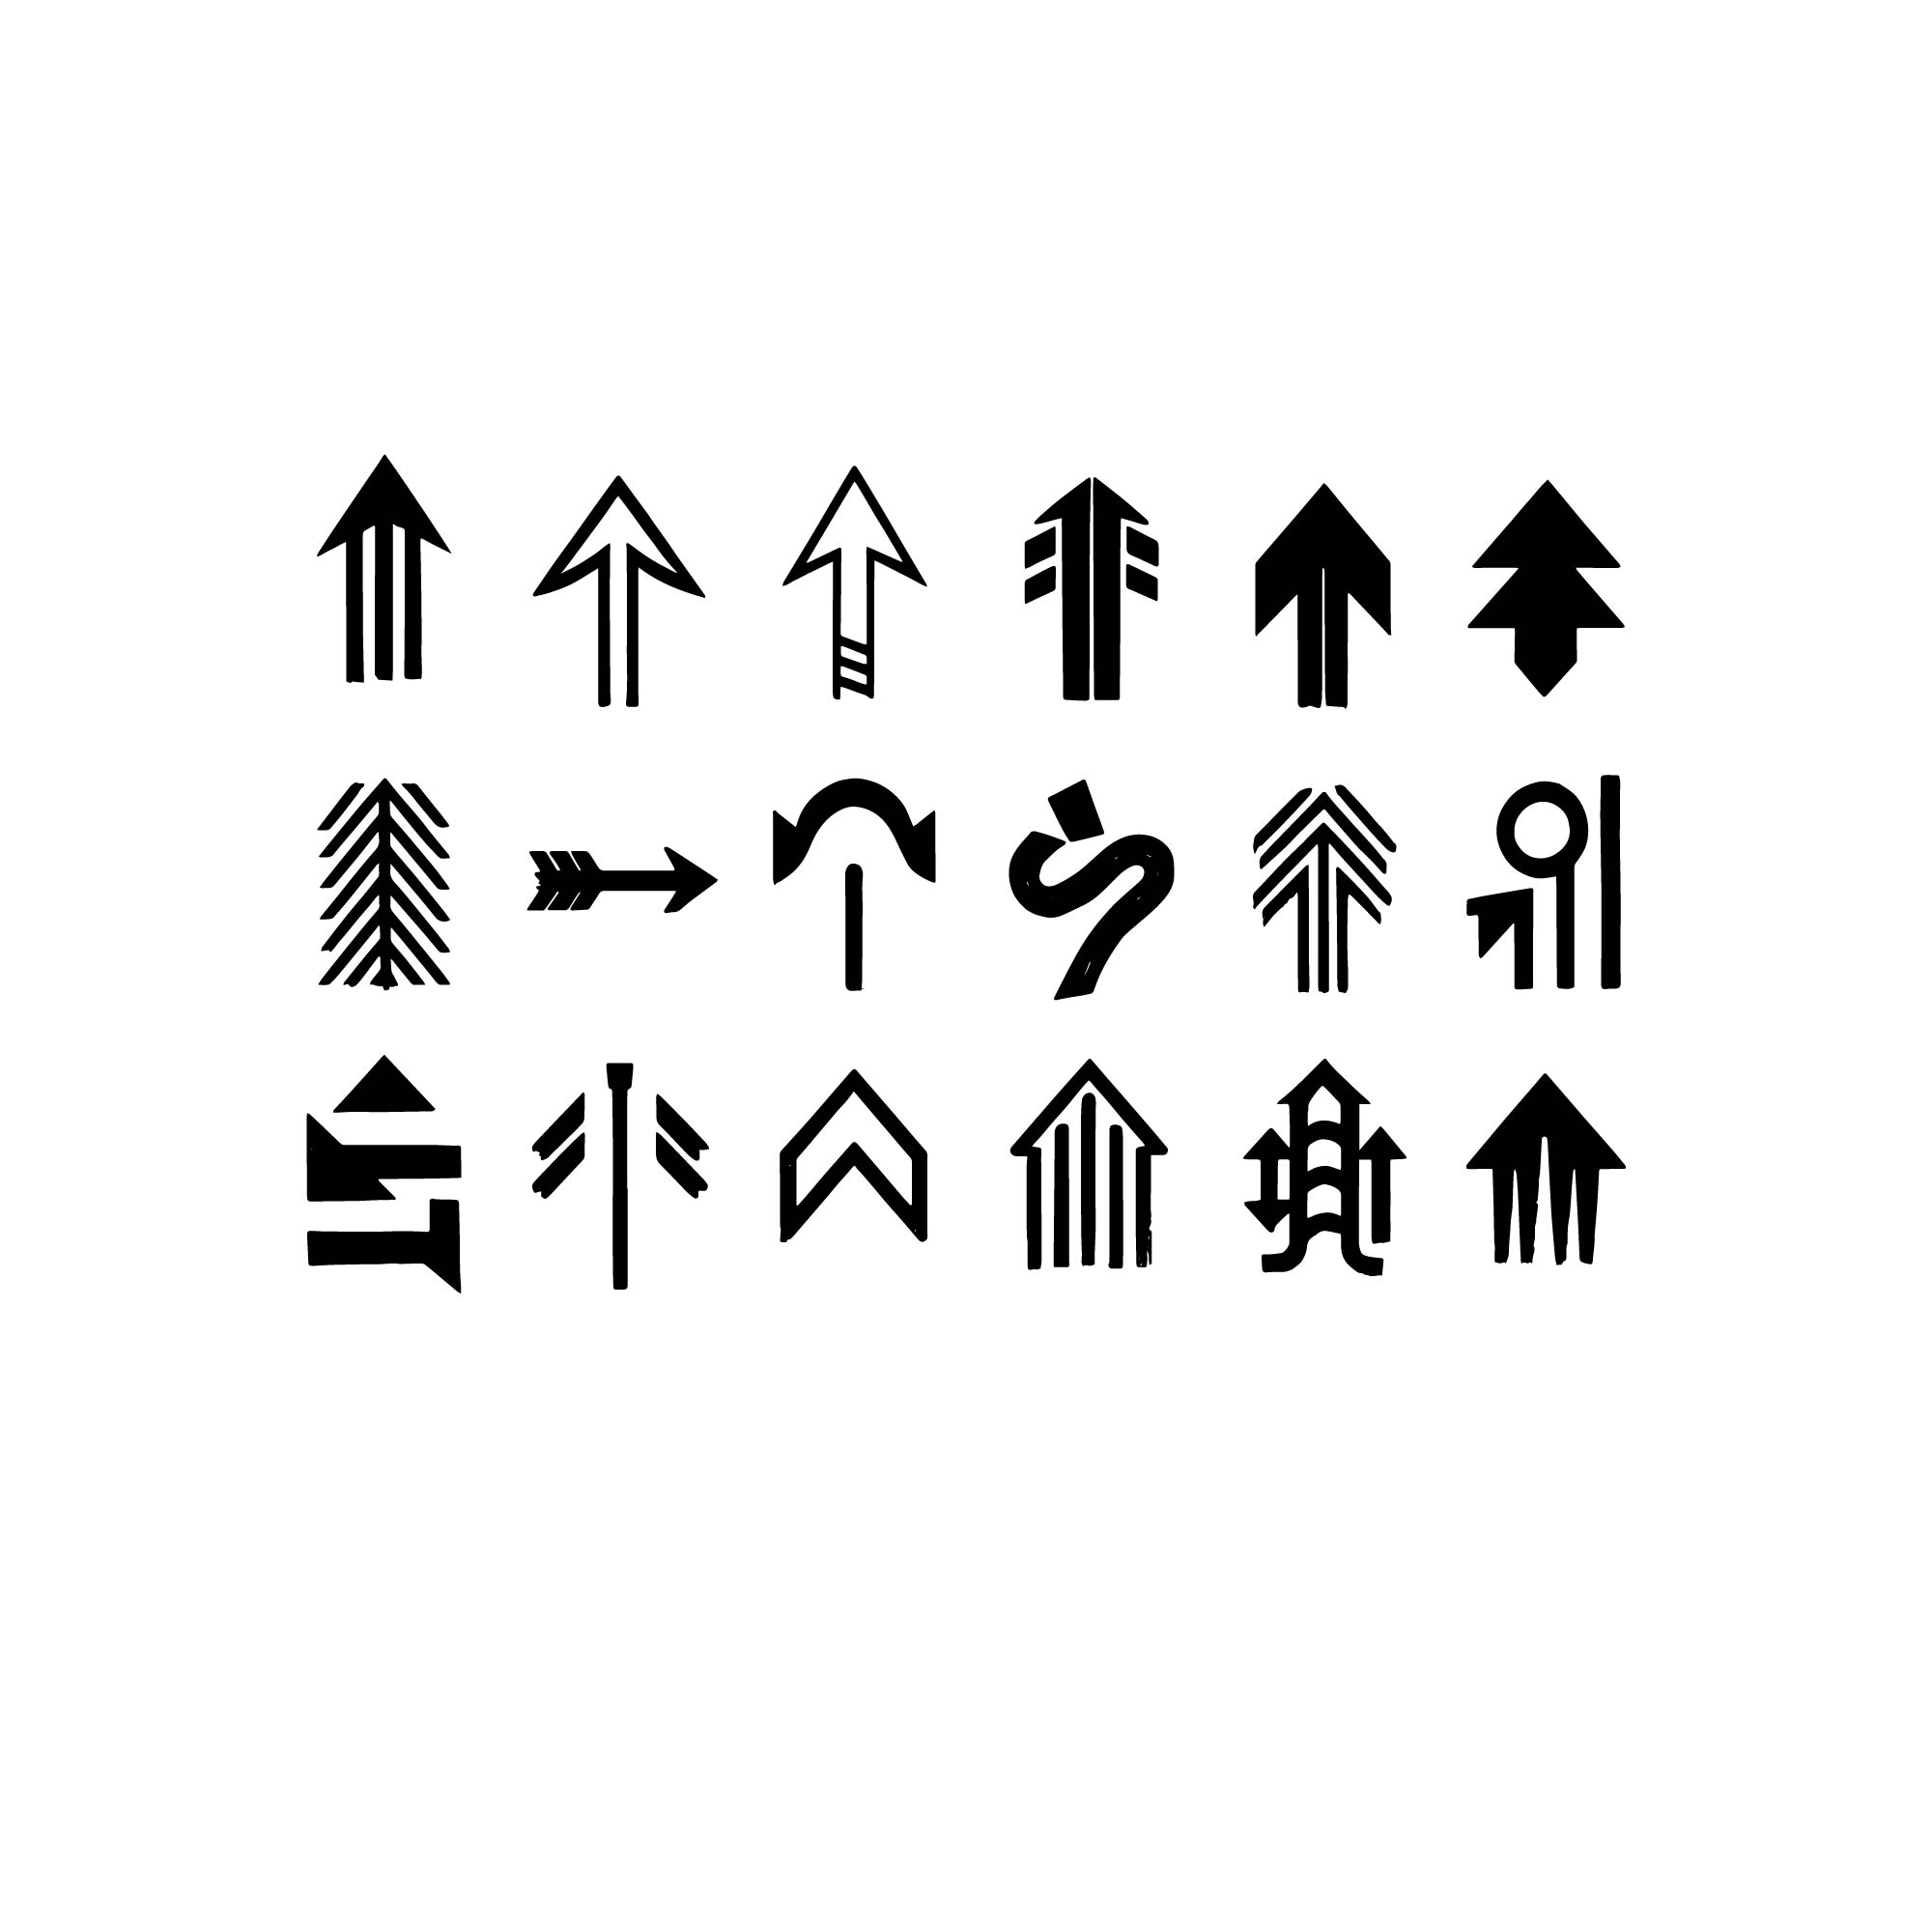 arrow design shapes logos 01 316